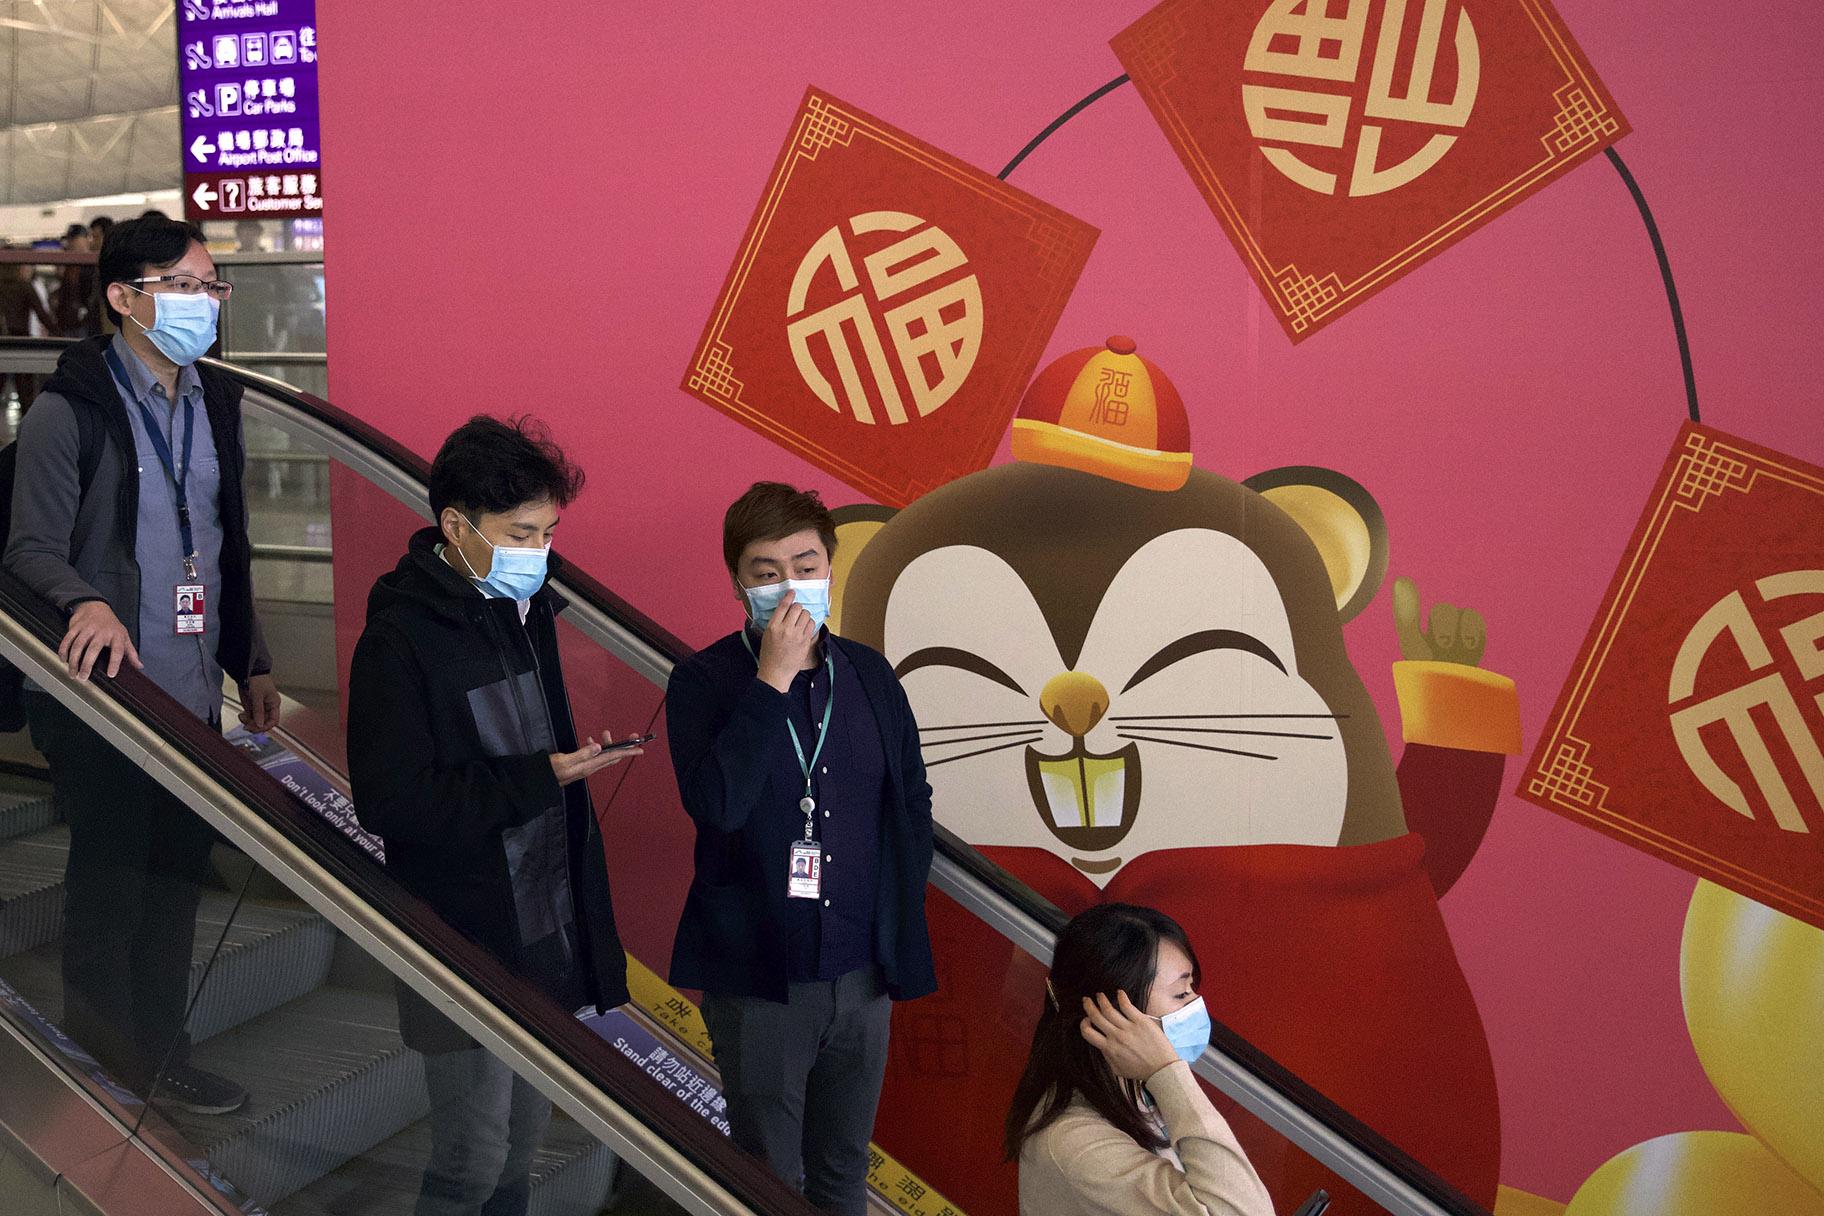 People wear face masks as they ride an escalator at the Hong Kong International Airport in Hong Kong, Tuesday, Jan. 21, 2020. (AP Photo / Ng Han Guan)